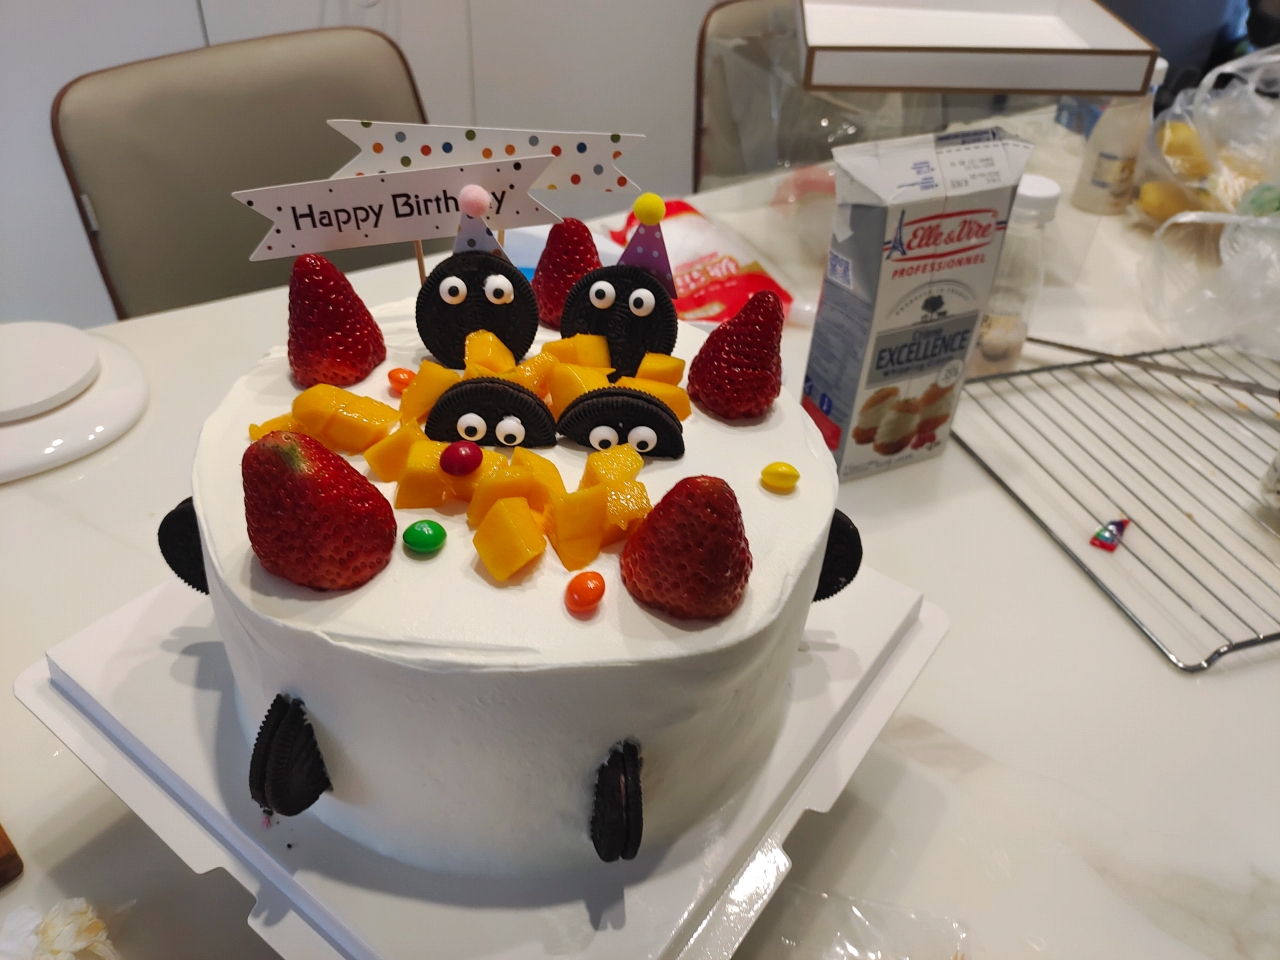 《Tinrry+》超经典的日式草莓奶油蛋糕 2.0版本（6寸配方）